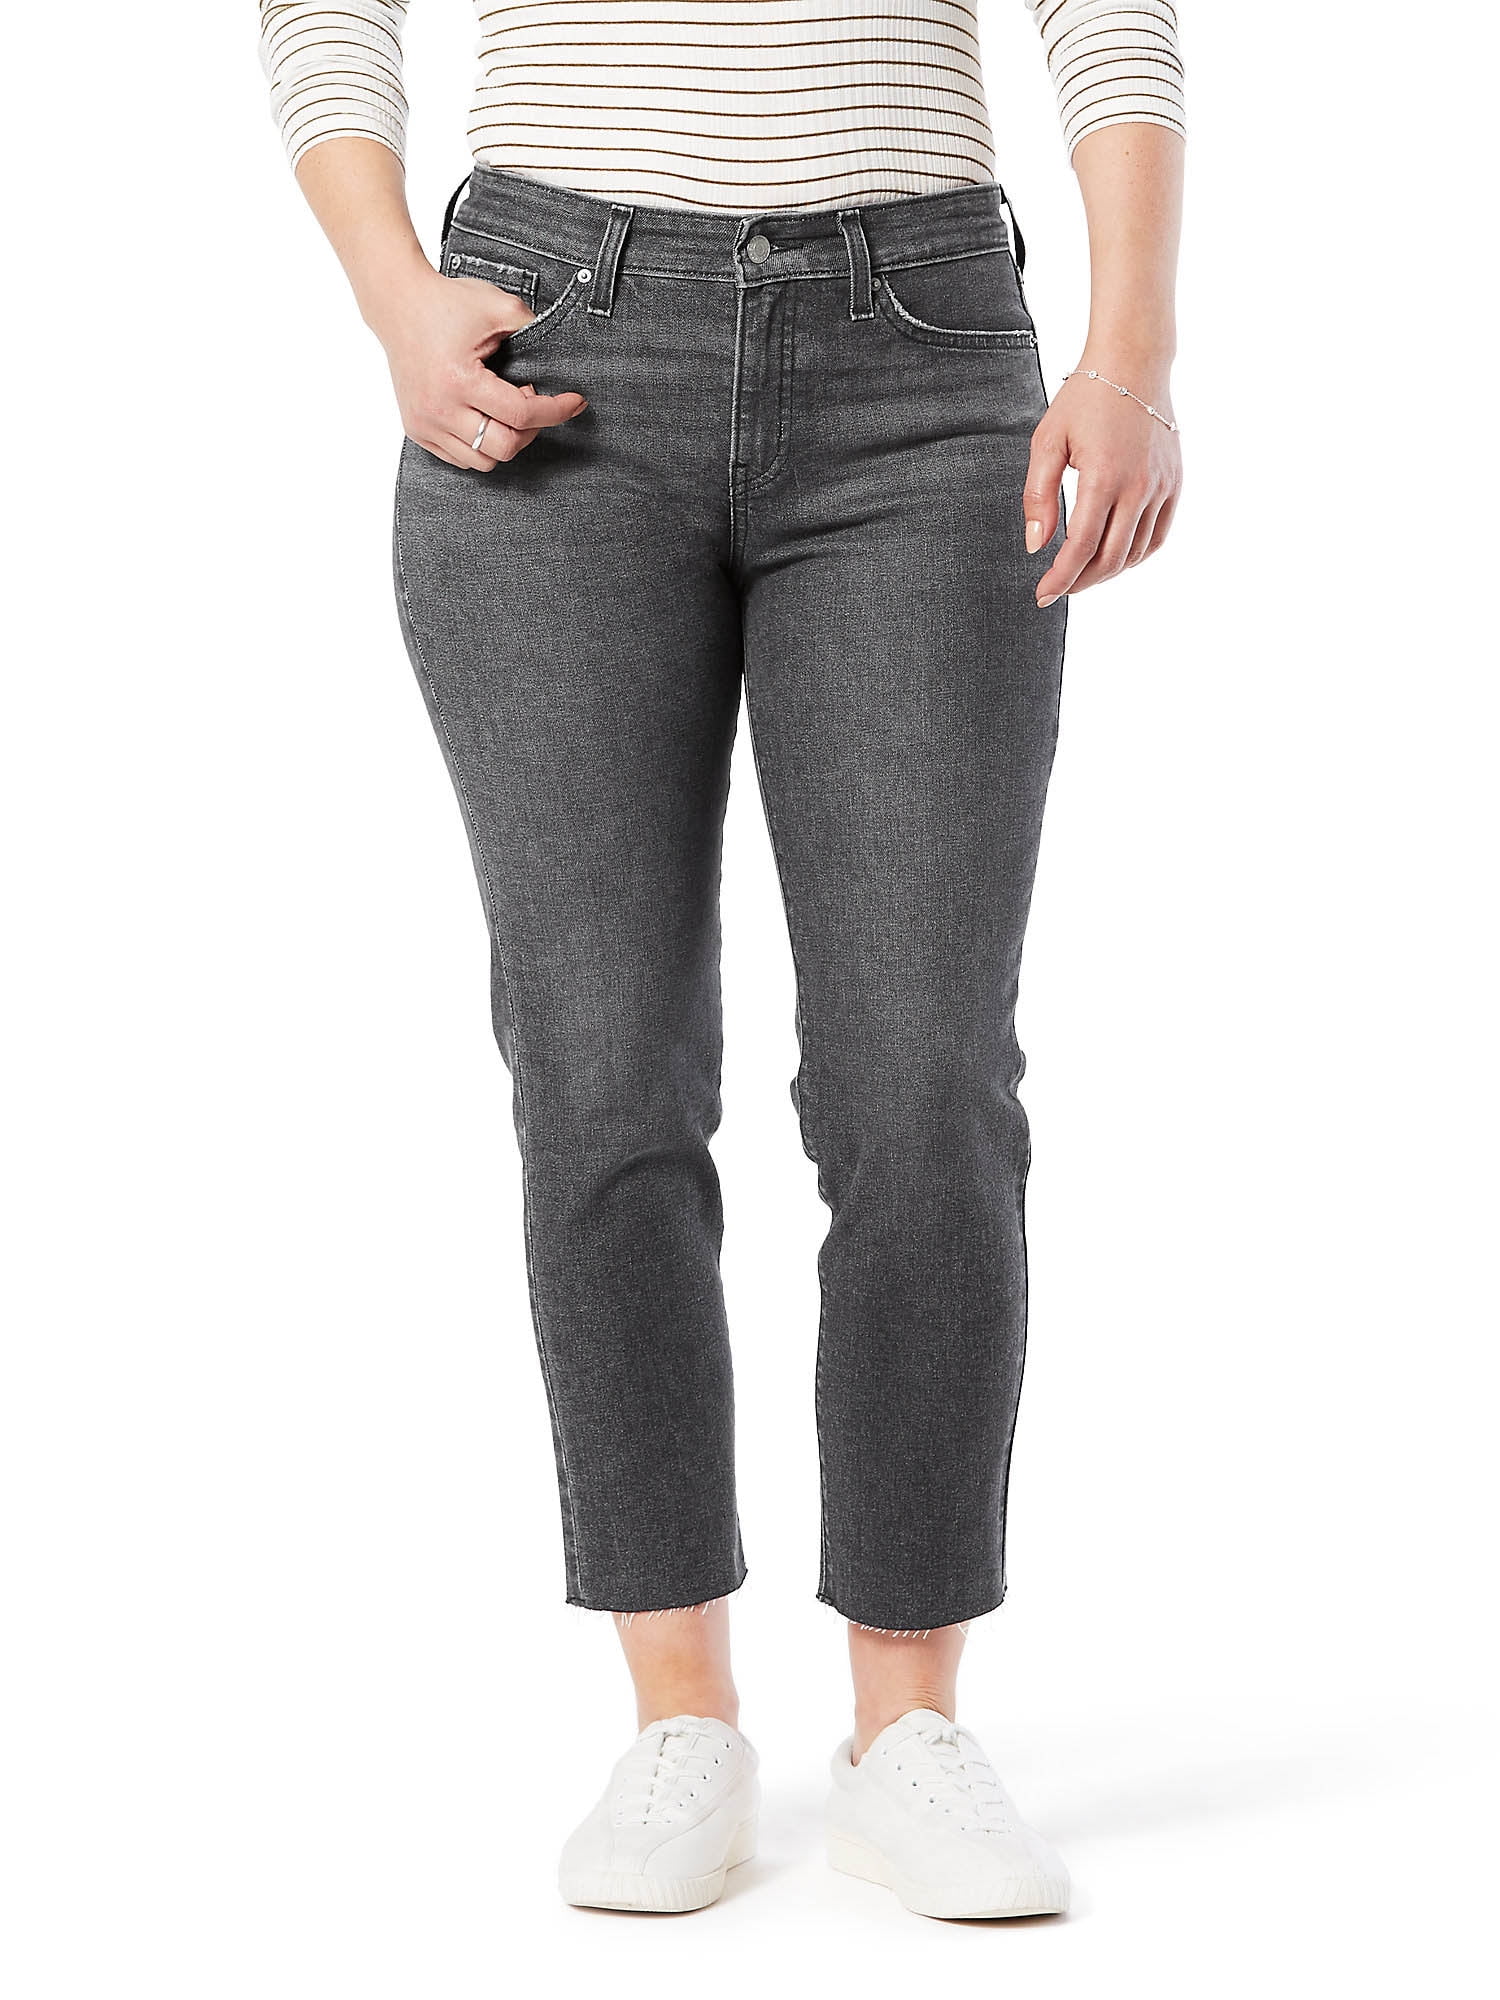 Levi & Co. Women's Mid Rise Slim Fit Boyfriend Cut-Off Jeans -